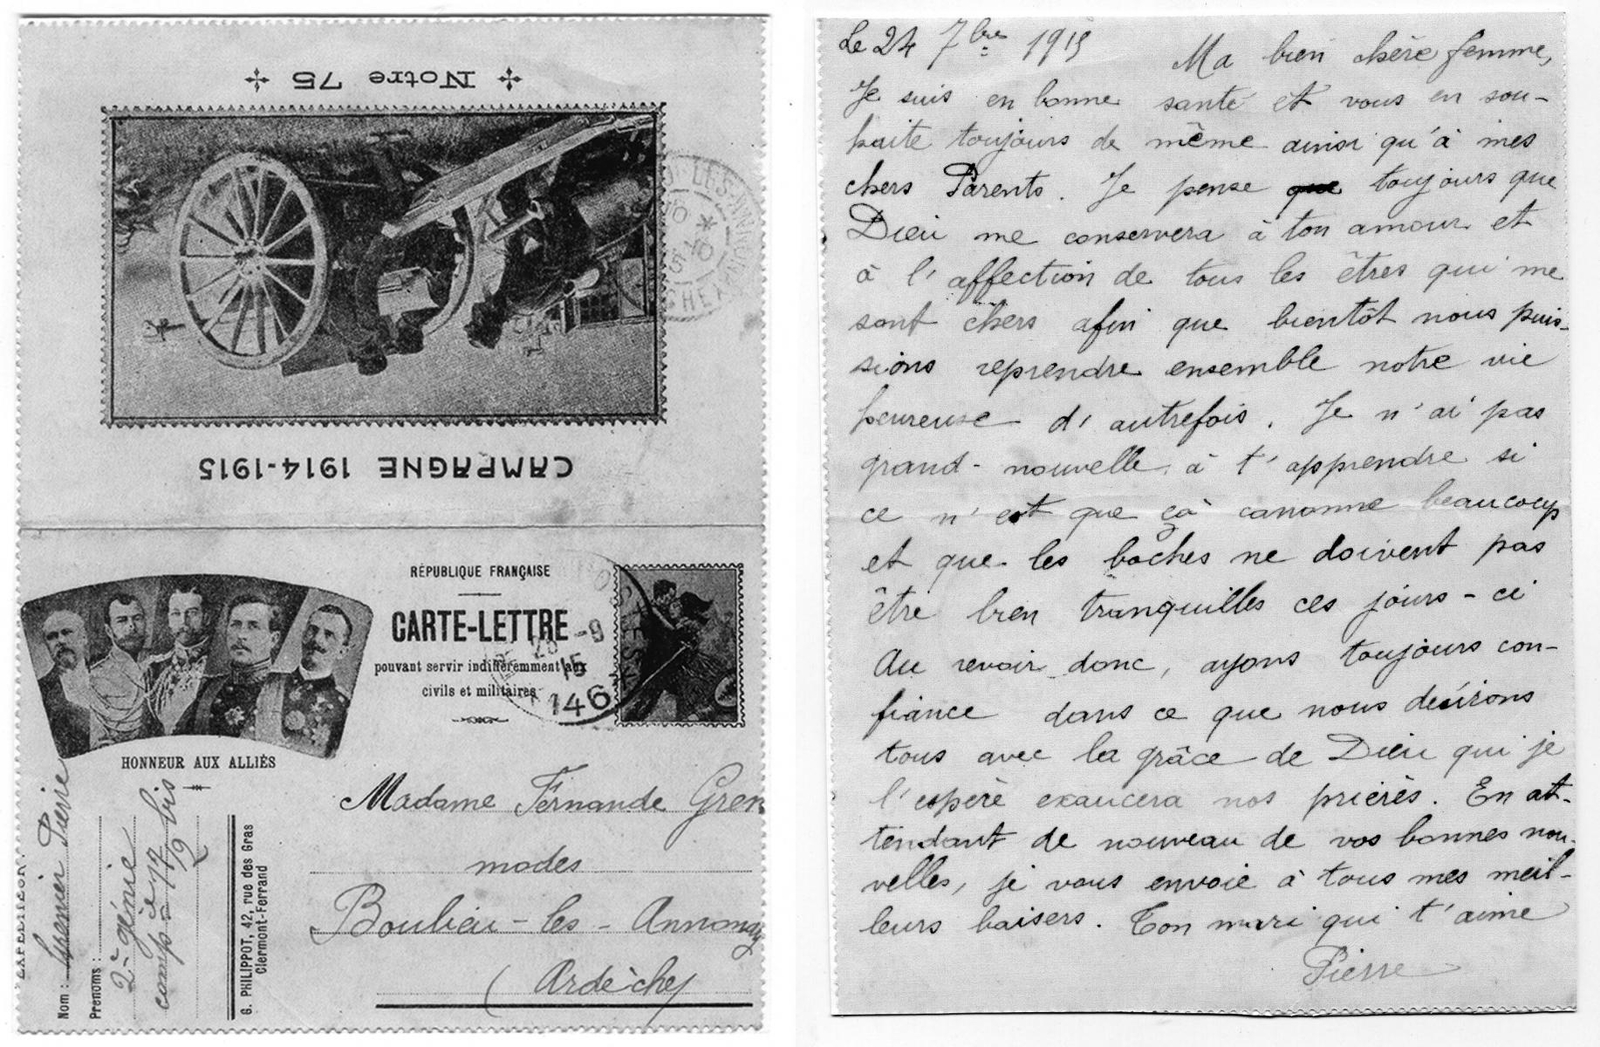 Carte lettre du soldat Pierre Grenier à sa femme, datée du 24 septembre 1915 - Fonds documentaire de la famille Grenier